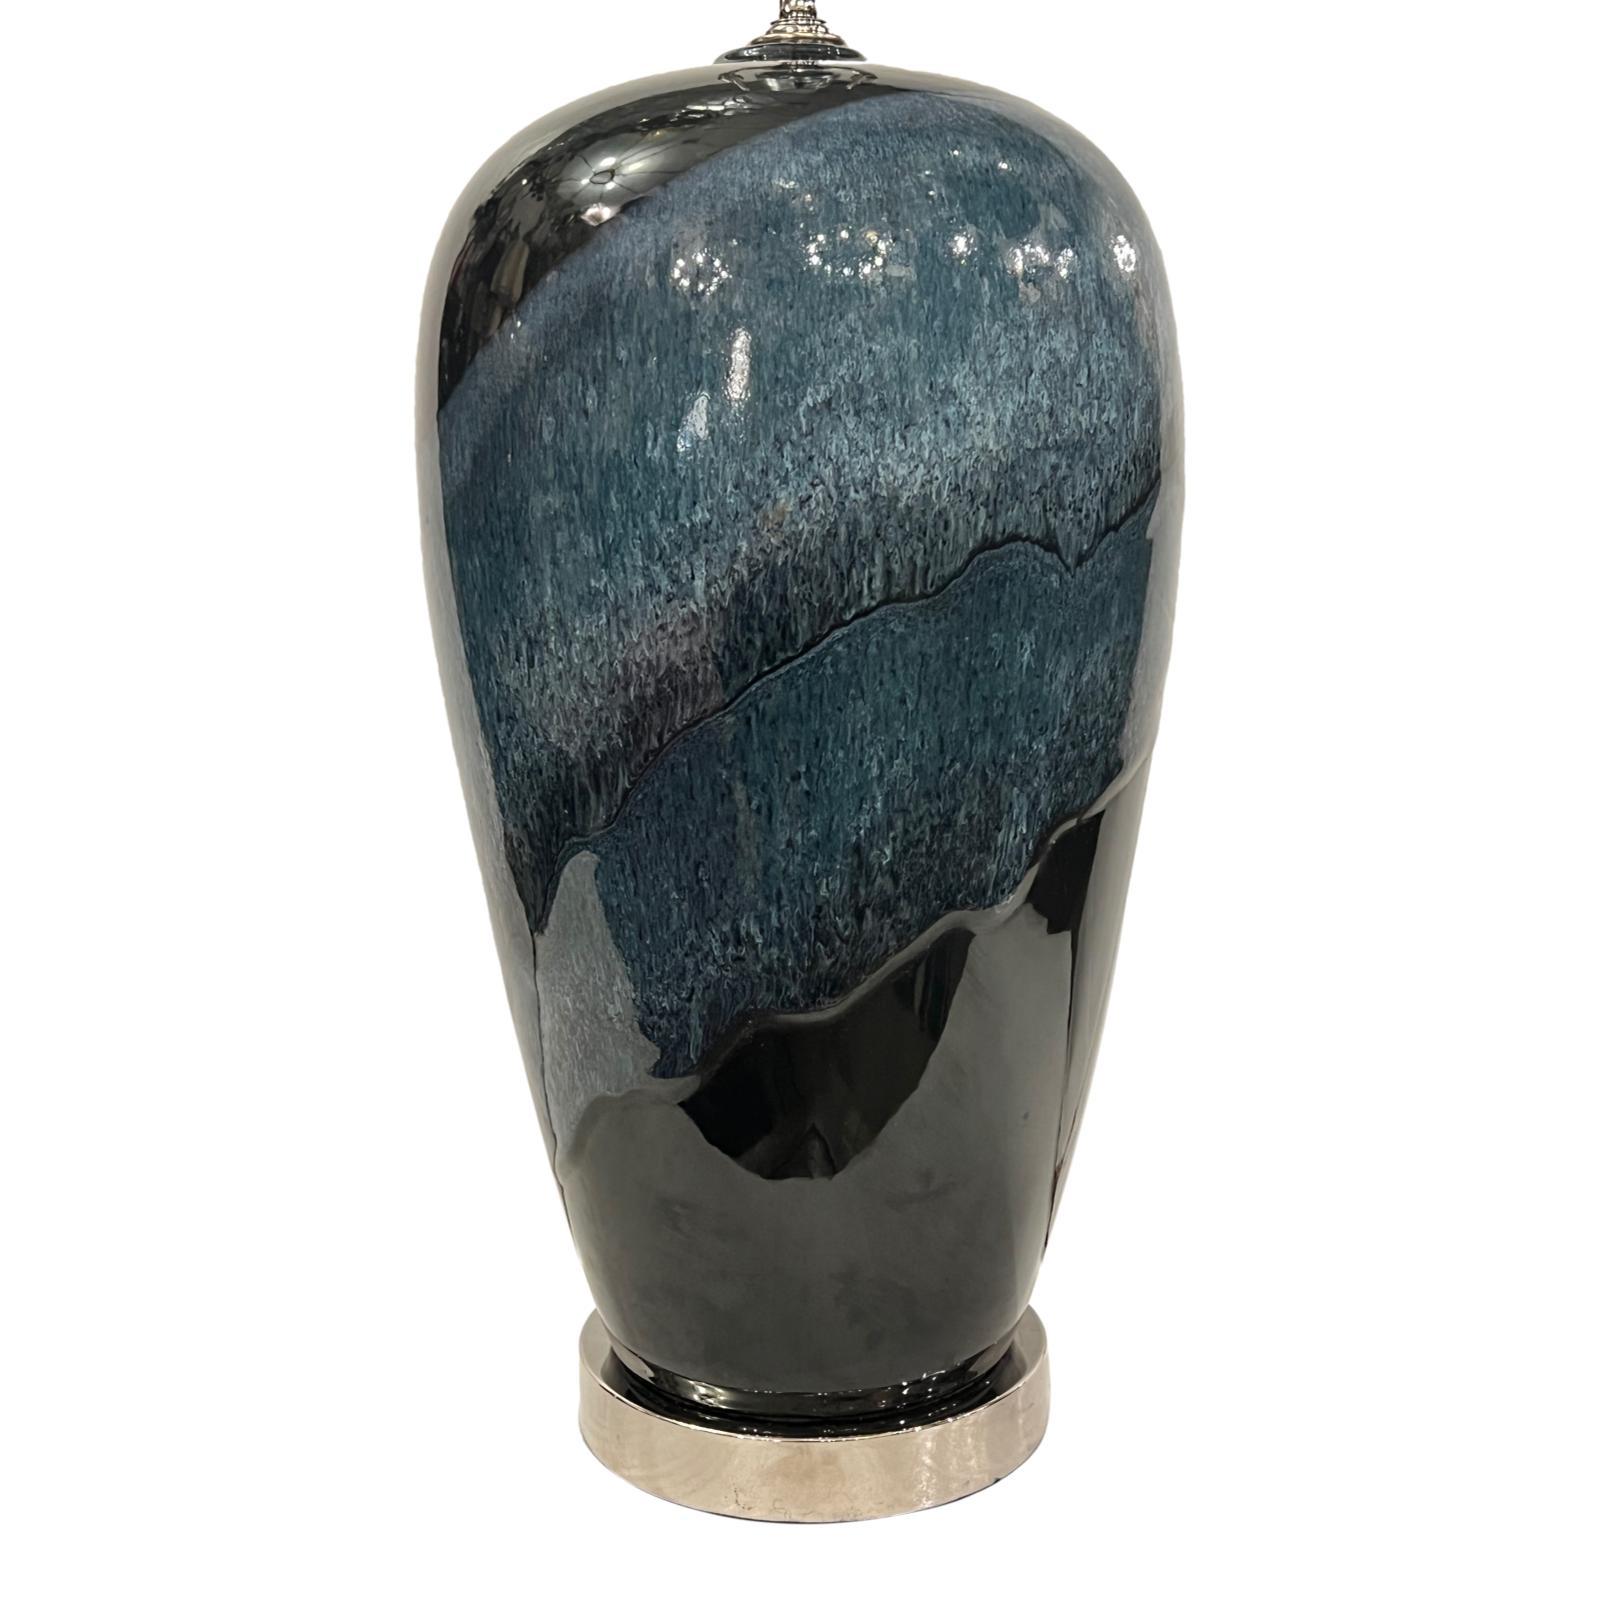 Lampe de table en porcelaine bleue italienne des années 1950 avec base en argent.

Mesures :
Hauteur du corps : 17
Hauteur de l'appui de l'abat-jour : 27